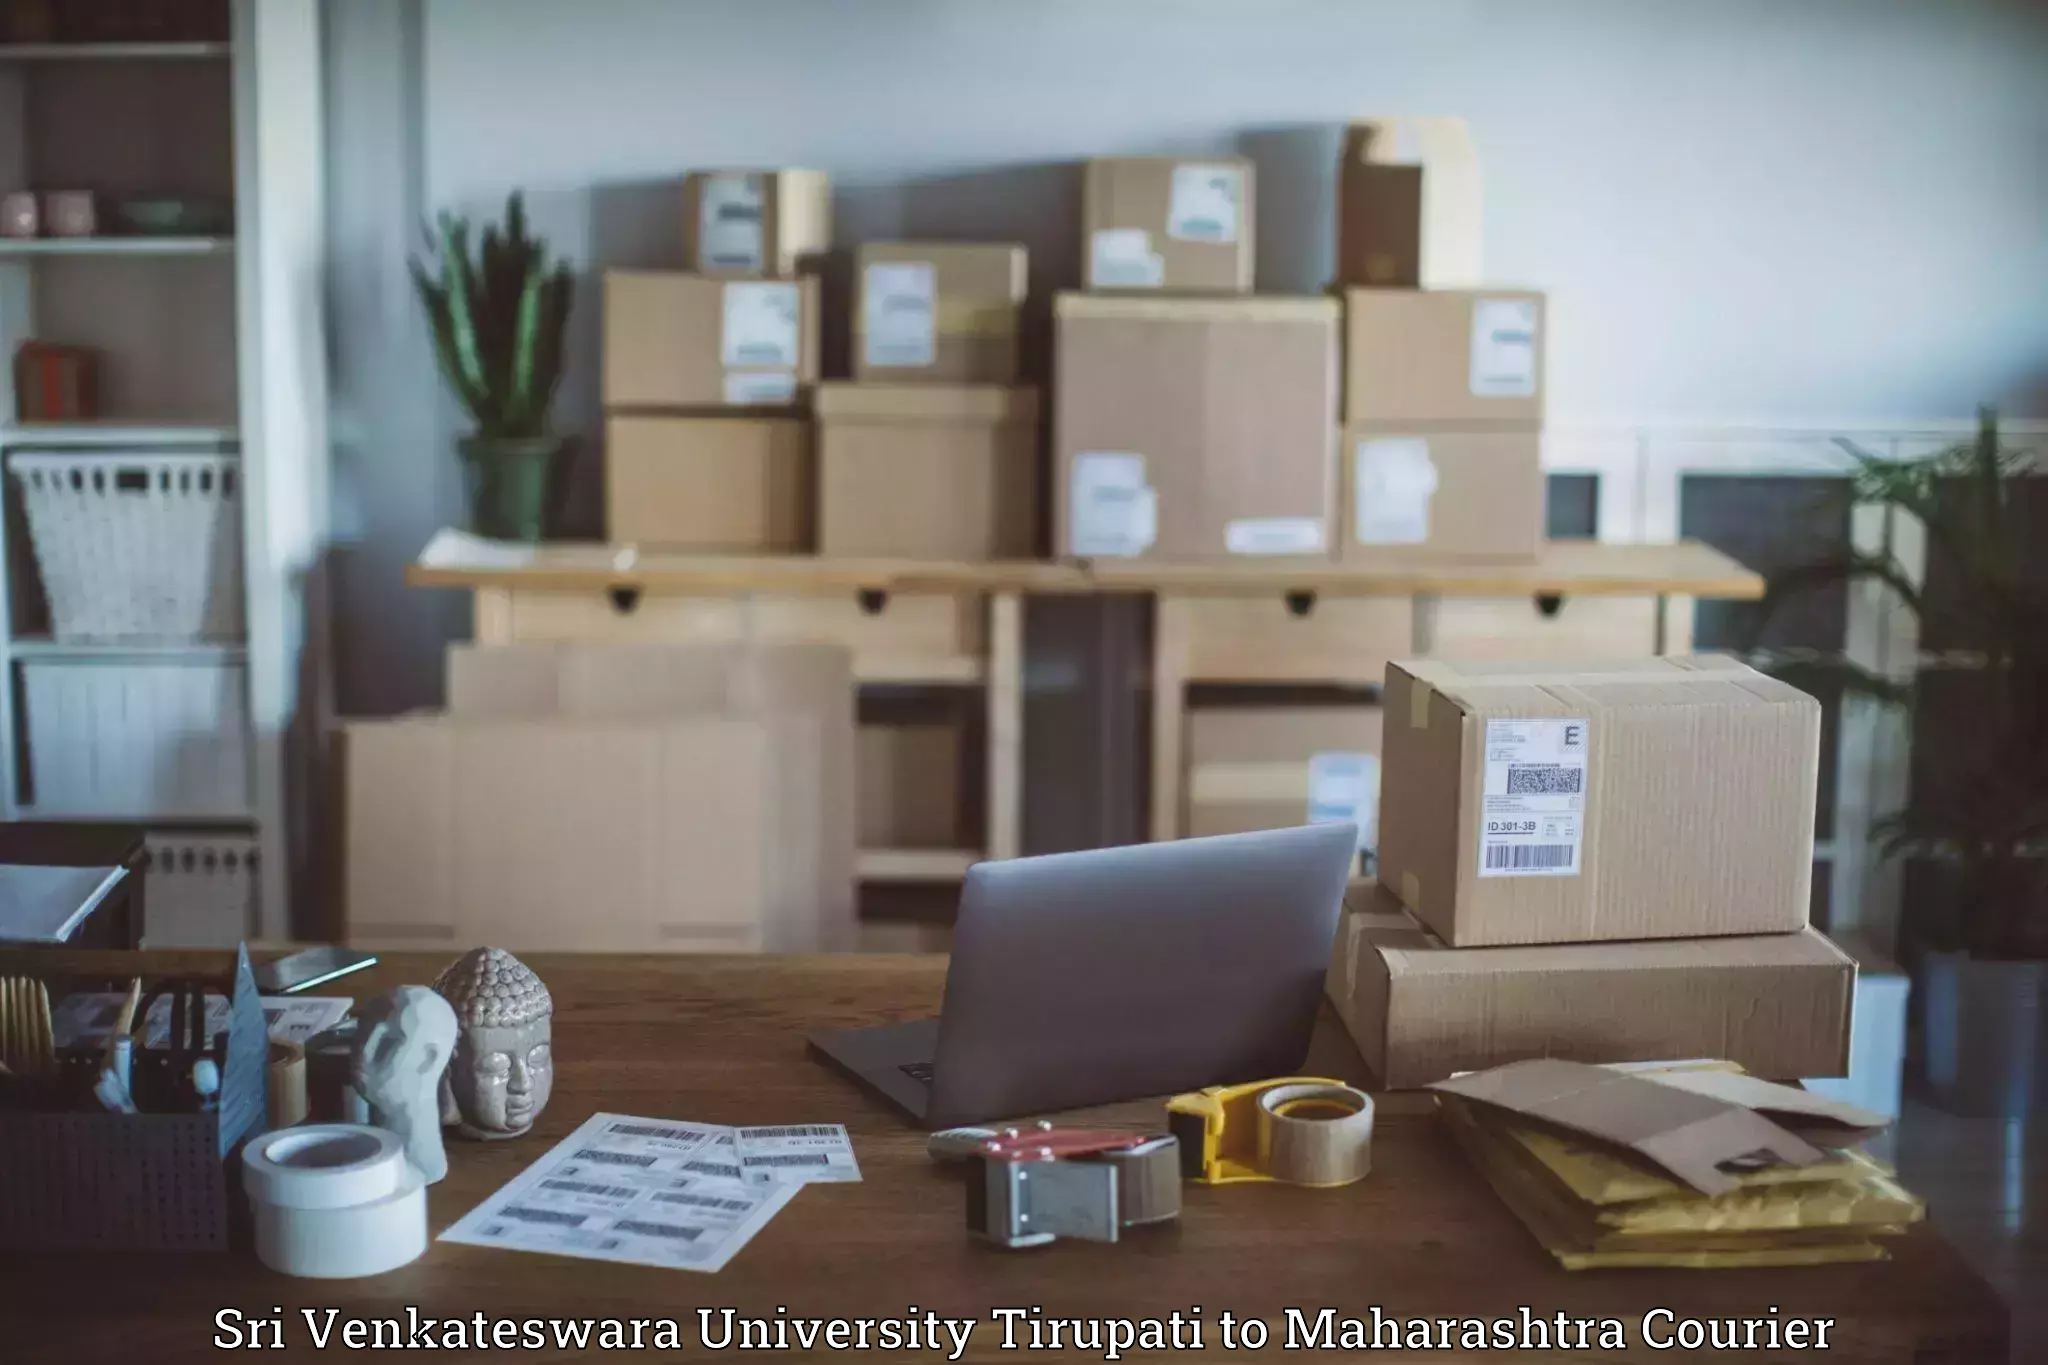 Large package courier Sri Venkateswara University Tirupati to Kagal